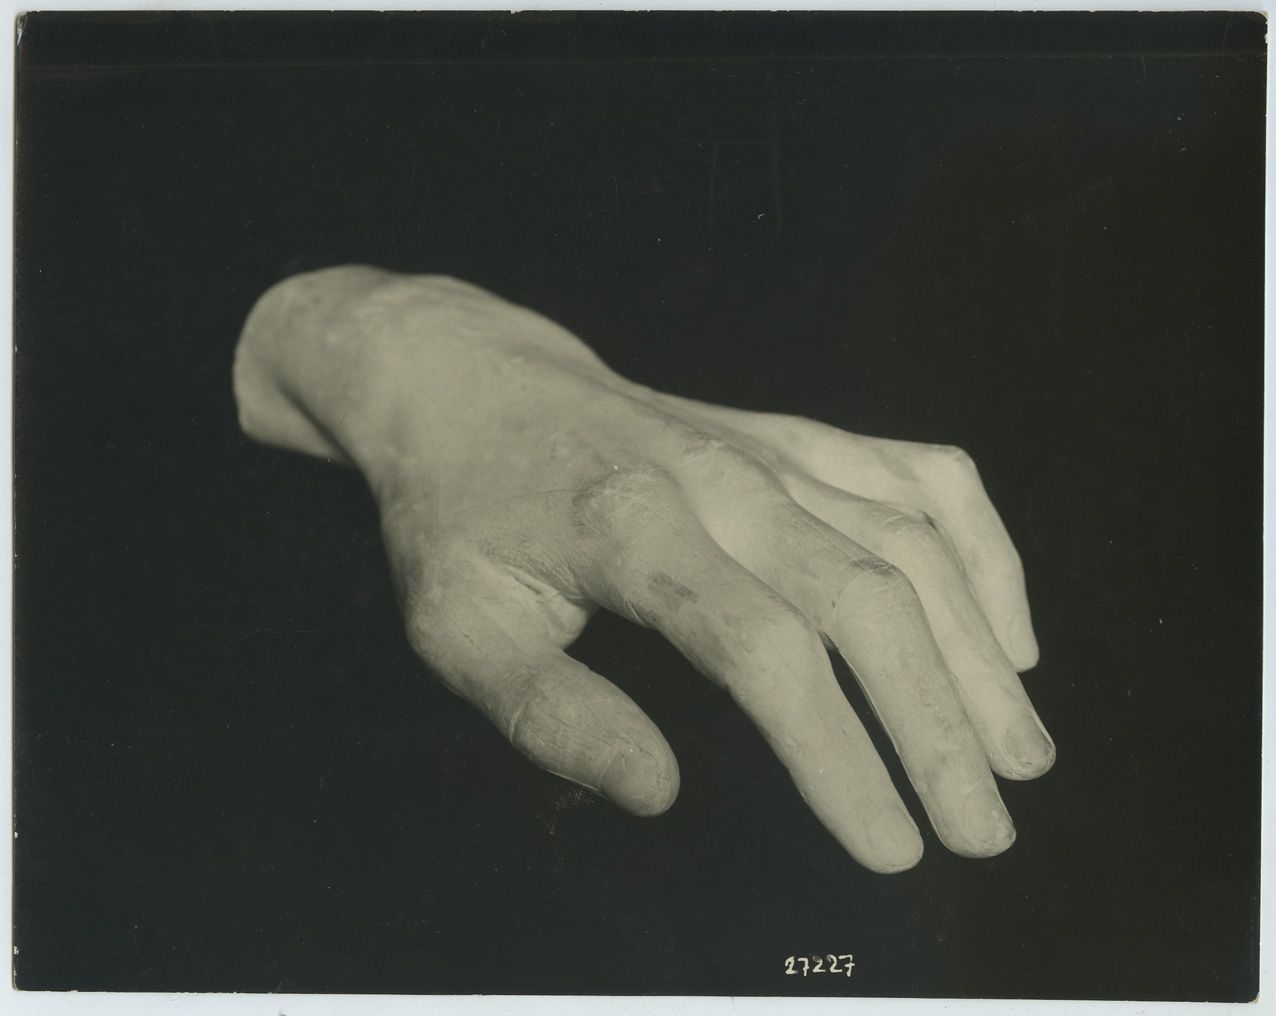 Null 雅克-欧内斯特-布洛兹（1858-1942 年）。肖邦的手》，约 1920 年。银质版画，17.5 x 22 厘米。背面有摄影师印章。